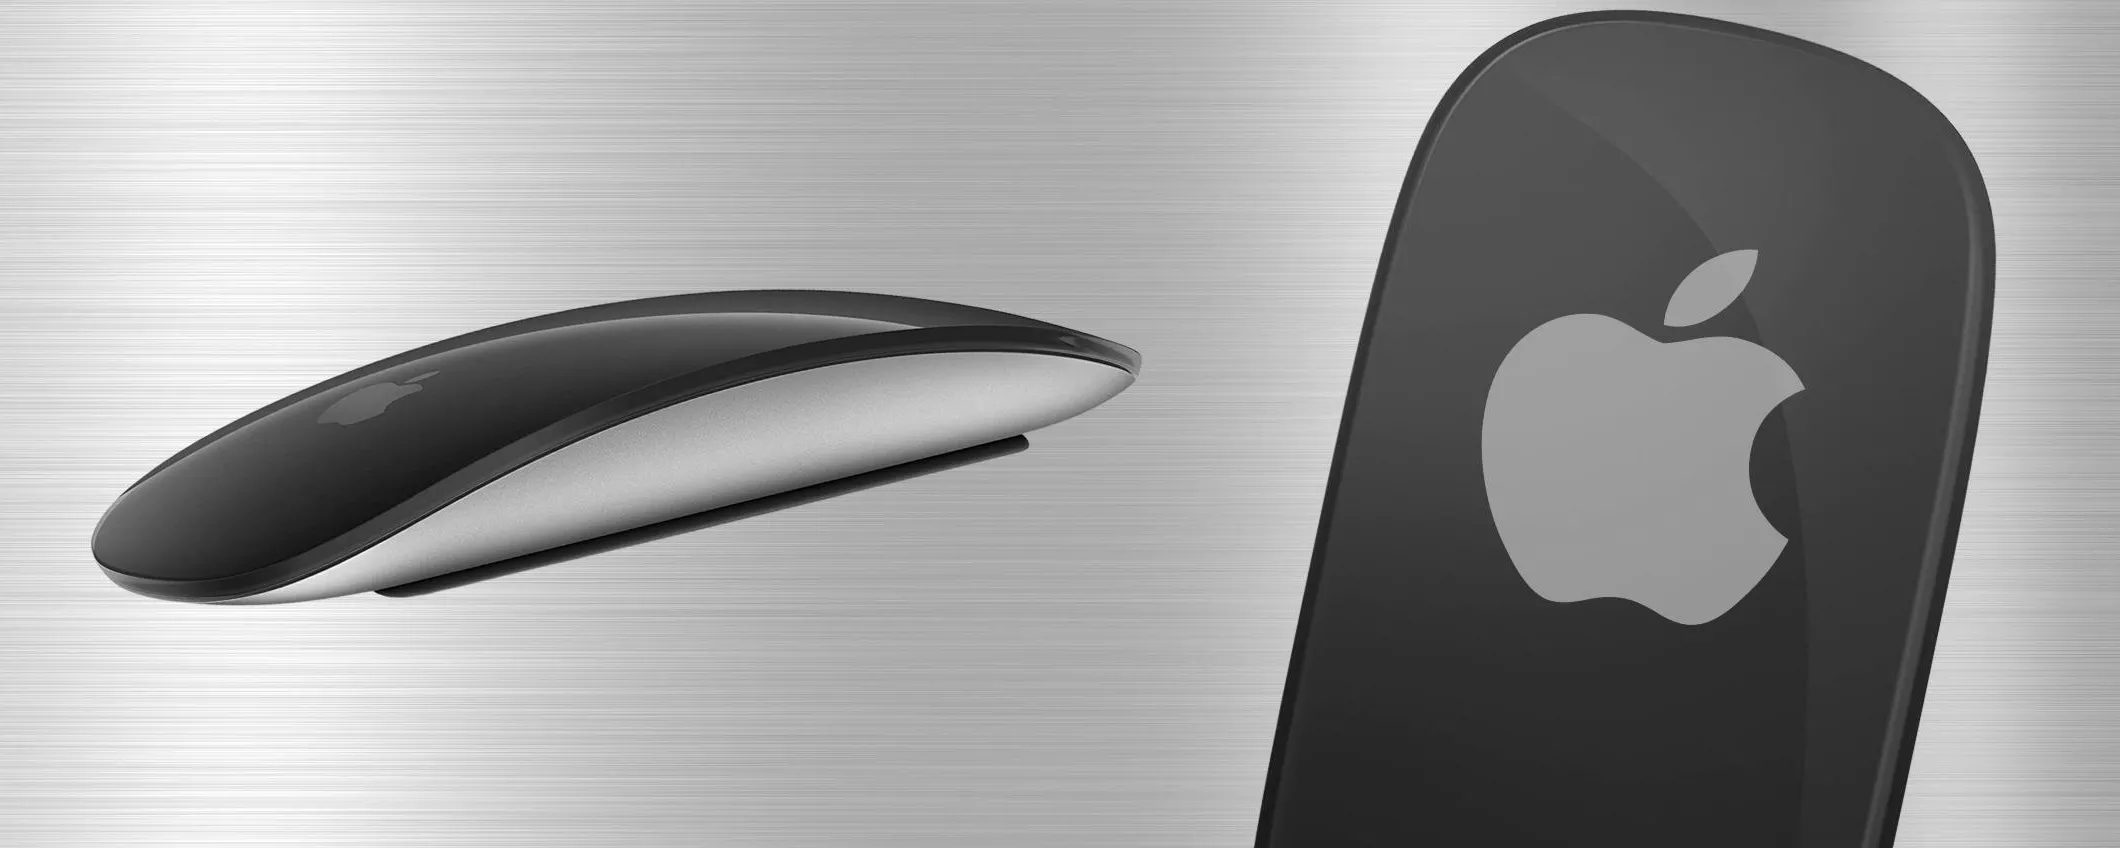 Apple Magic Mouse 2 scontato del 20% in colorazione NERA: approfittane